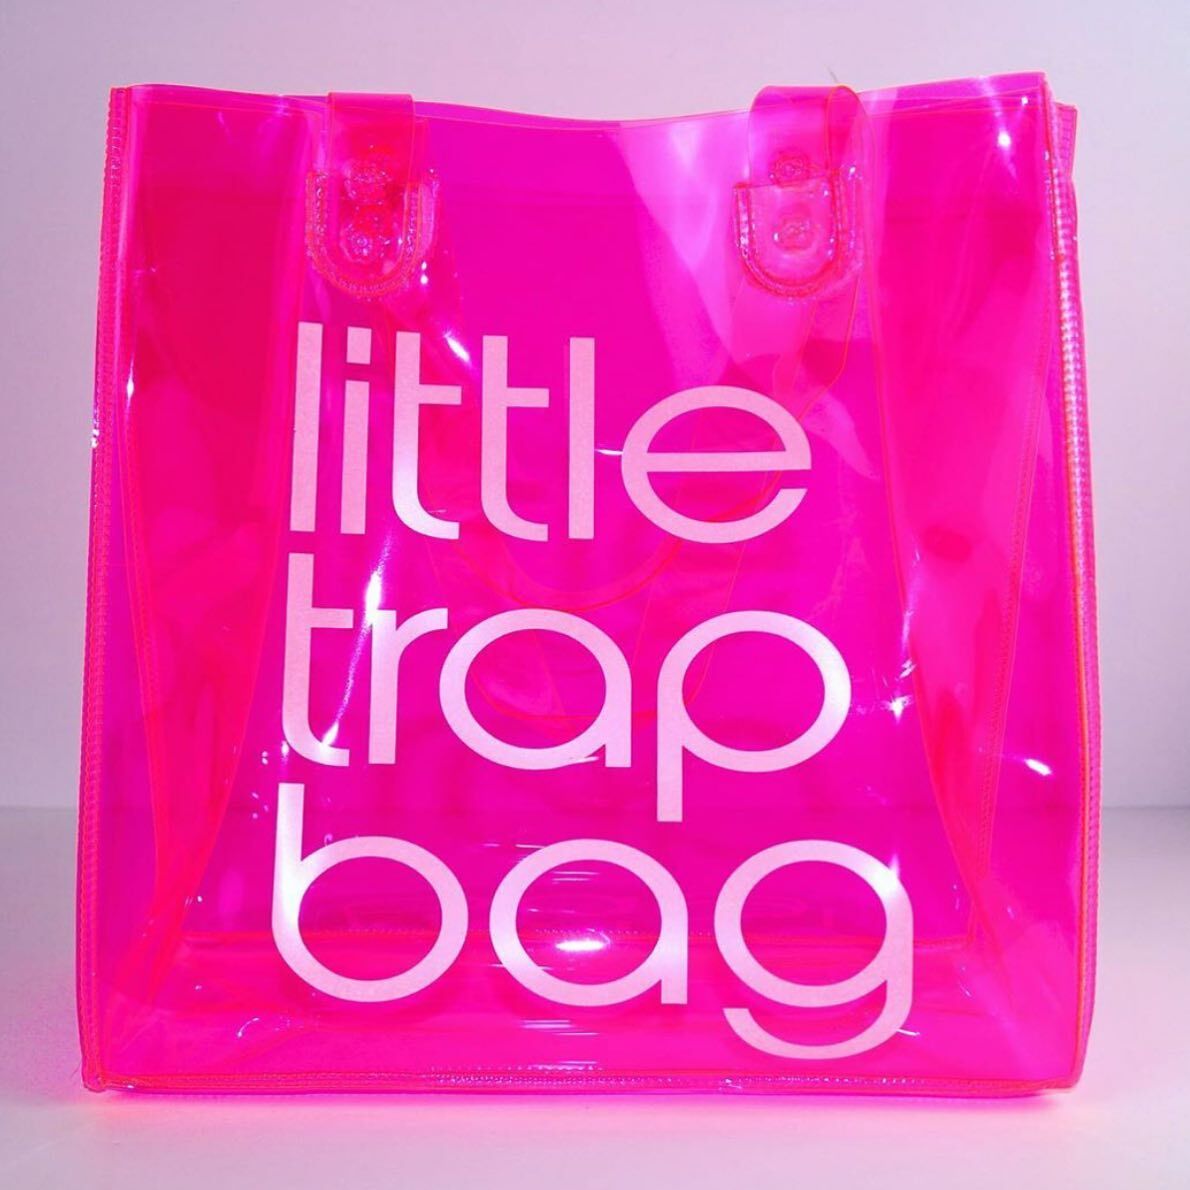 LITTLE TRAP BAGS